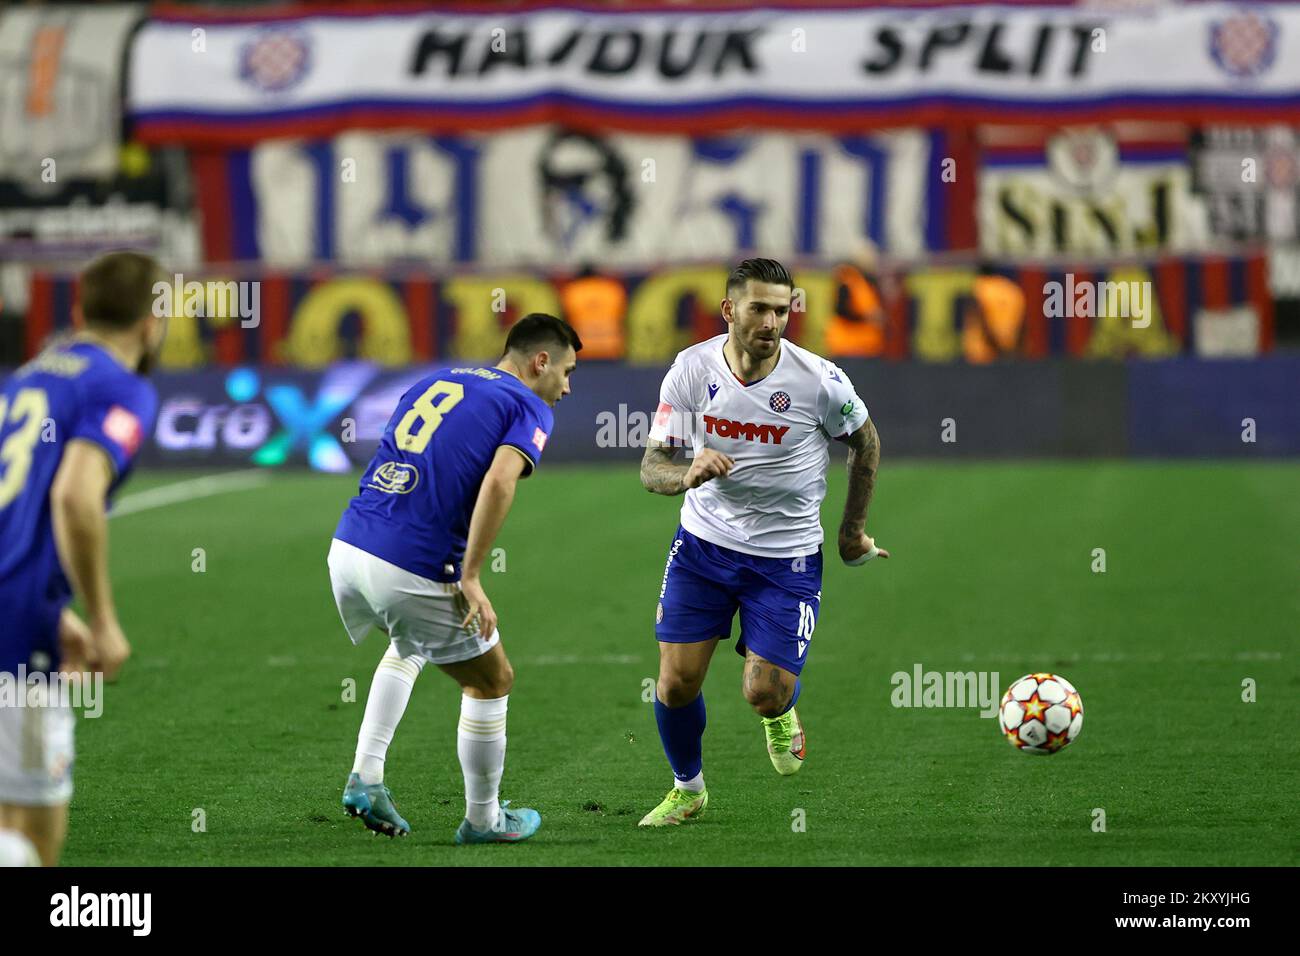 FO000350 Fotografija Hajduk Split vs Dinamo Zagreb 17x23.5cm